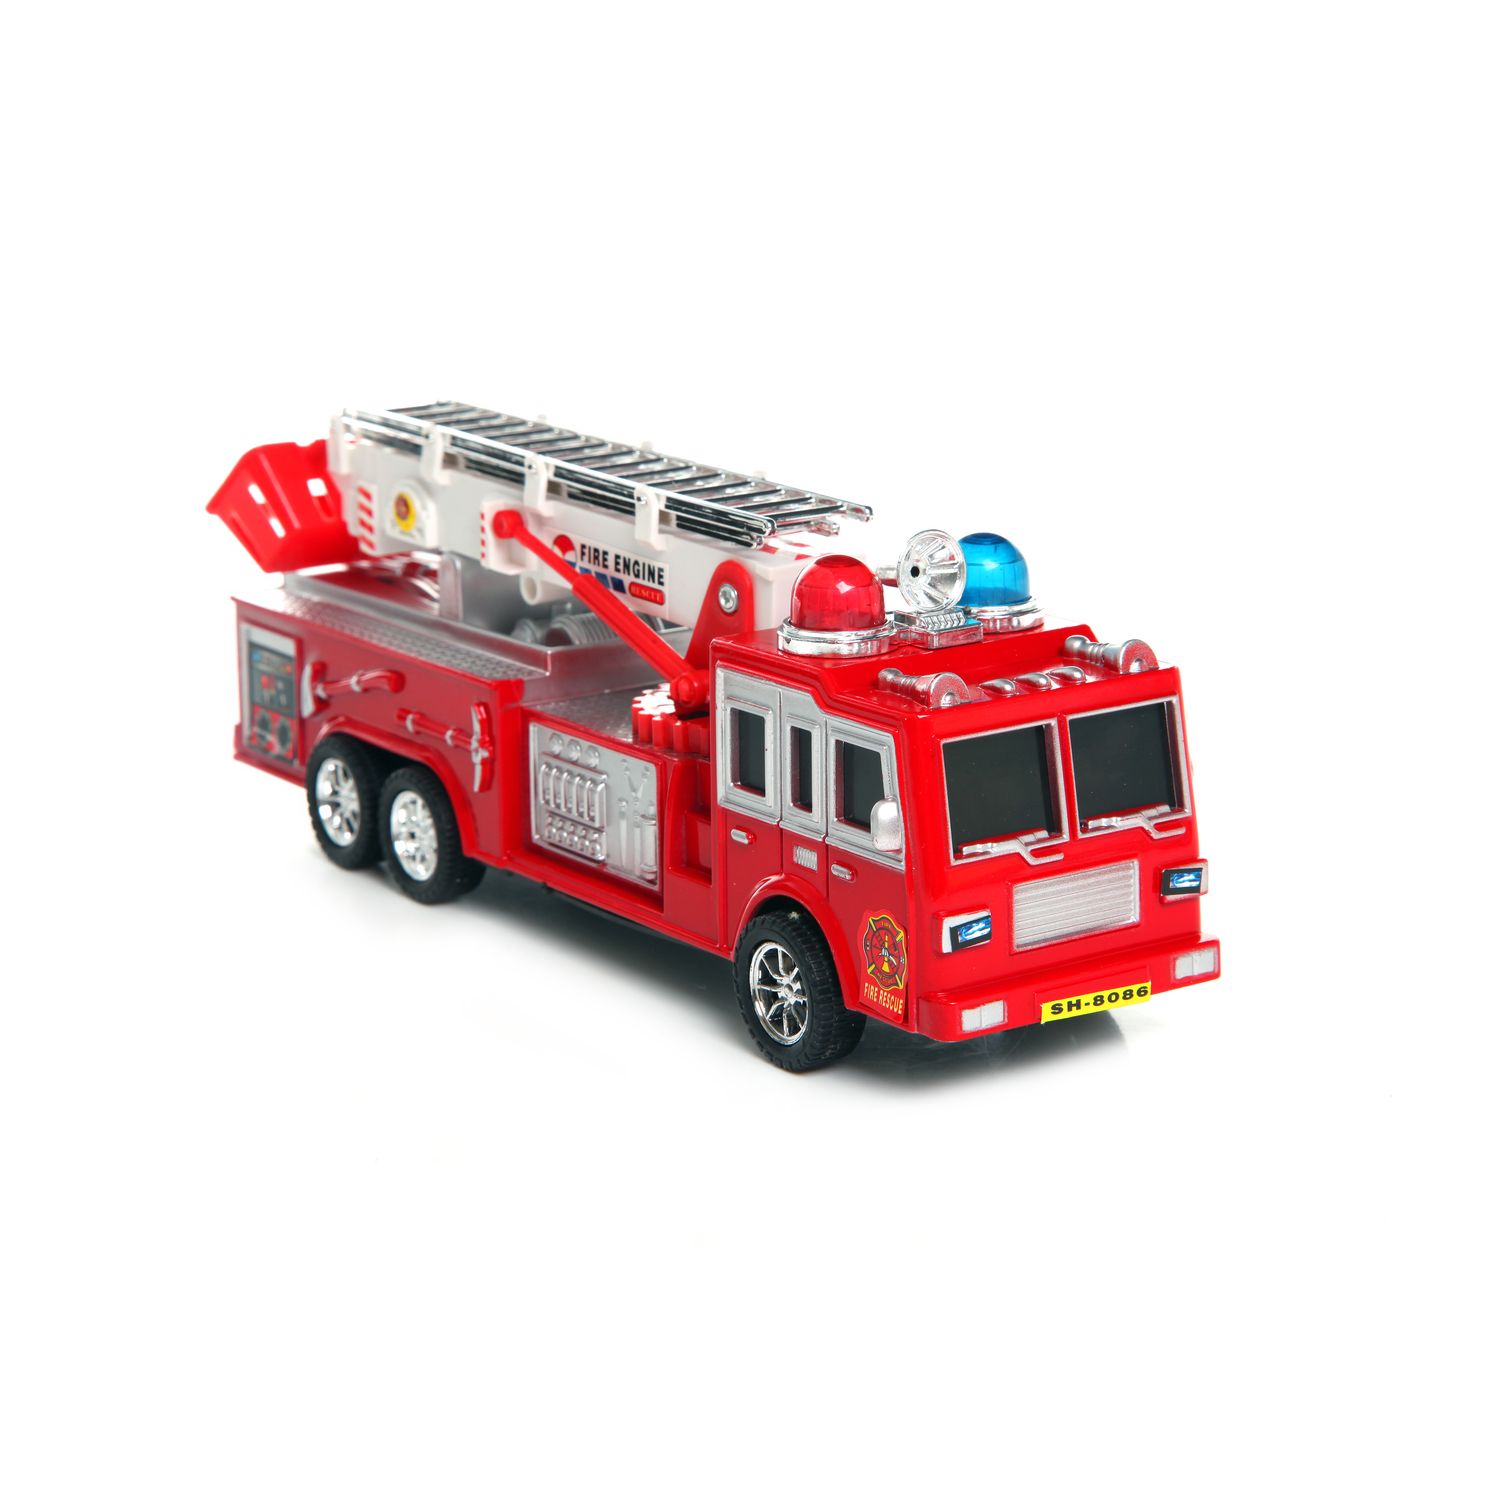 Машинки пожарная машина. Технопарк ЗИЛ 131 пожарная машина. Noname игрушка машина пожарная. Fire Rescue/23 см б28592 Китай. Машинка игрушка пожарка КАМАЗ.